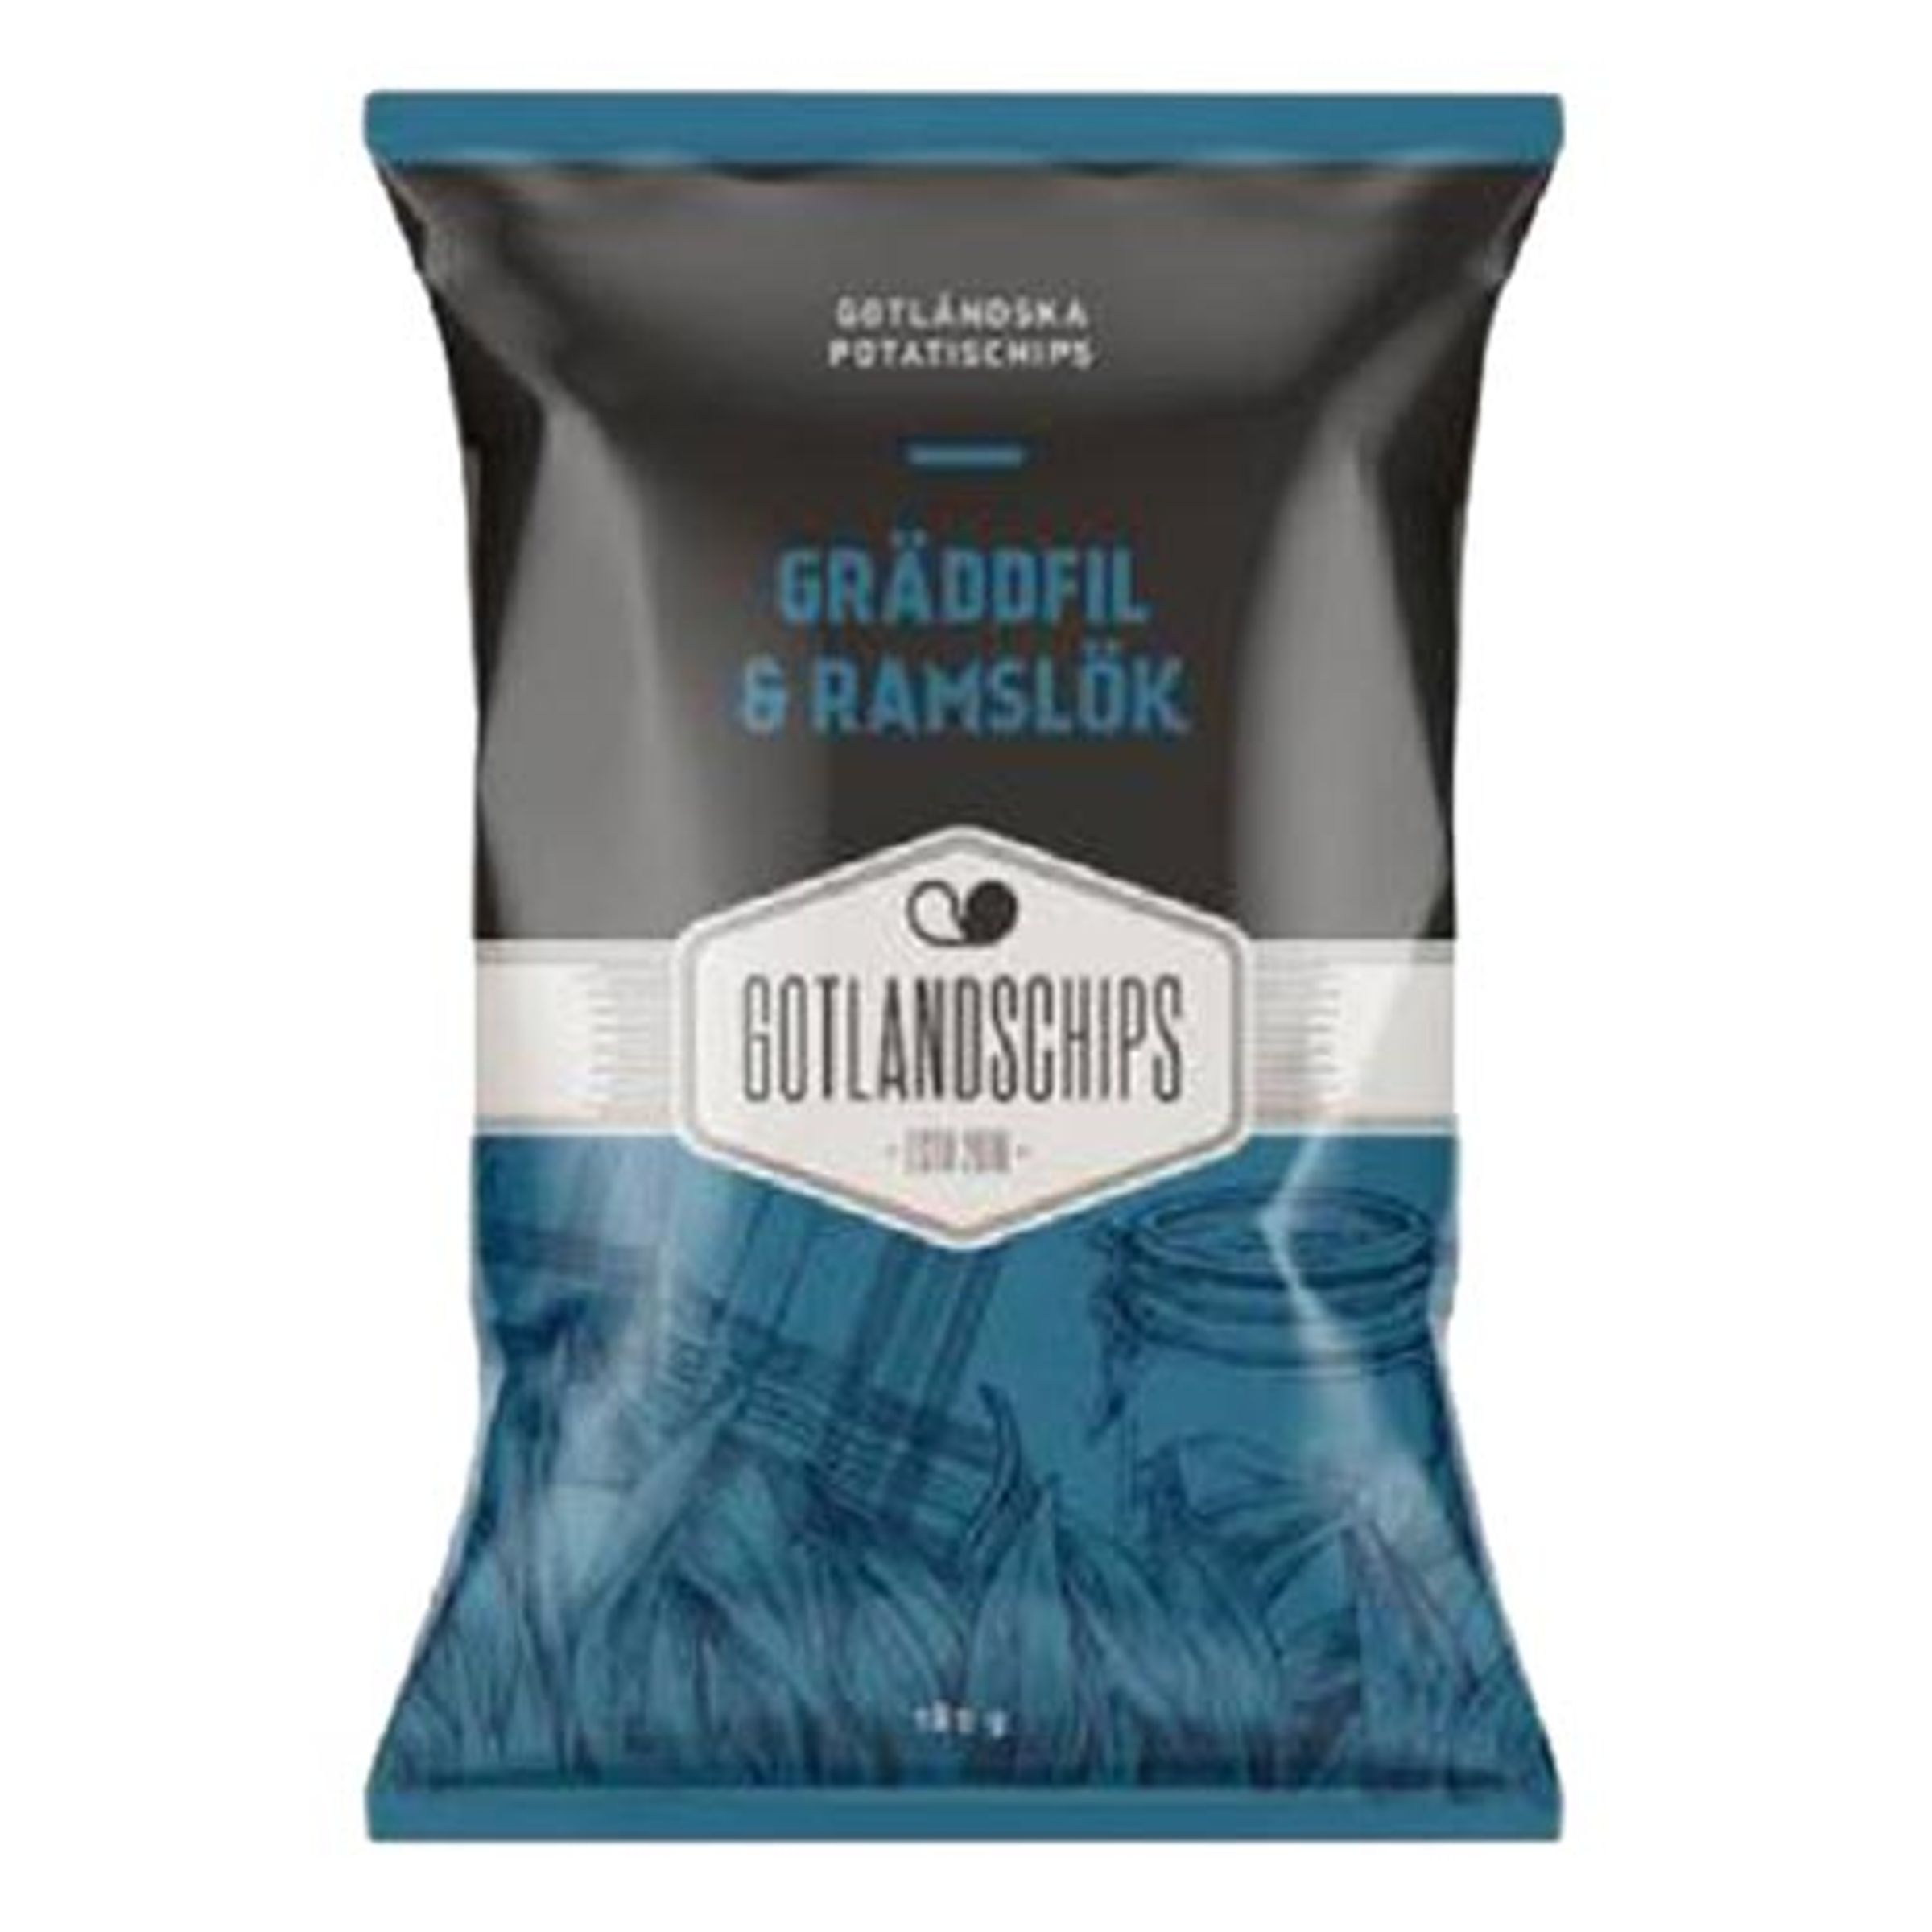 Gotlandschips Gräddfil & Ramslök - 180 gram | Chips//Godis & Läsk//Hem//Snacks | Partyoutlet